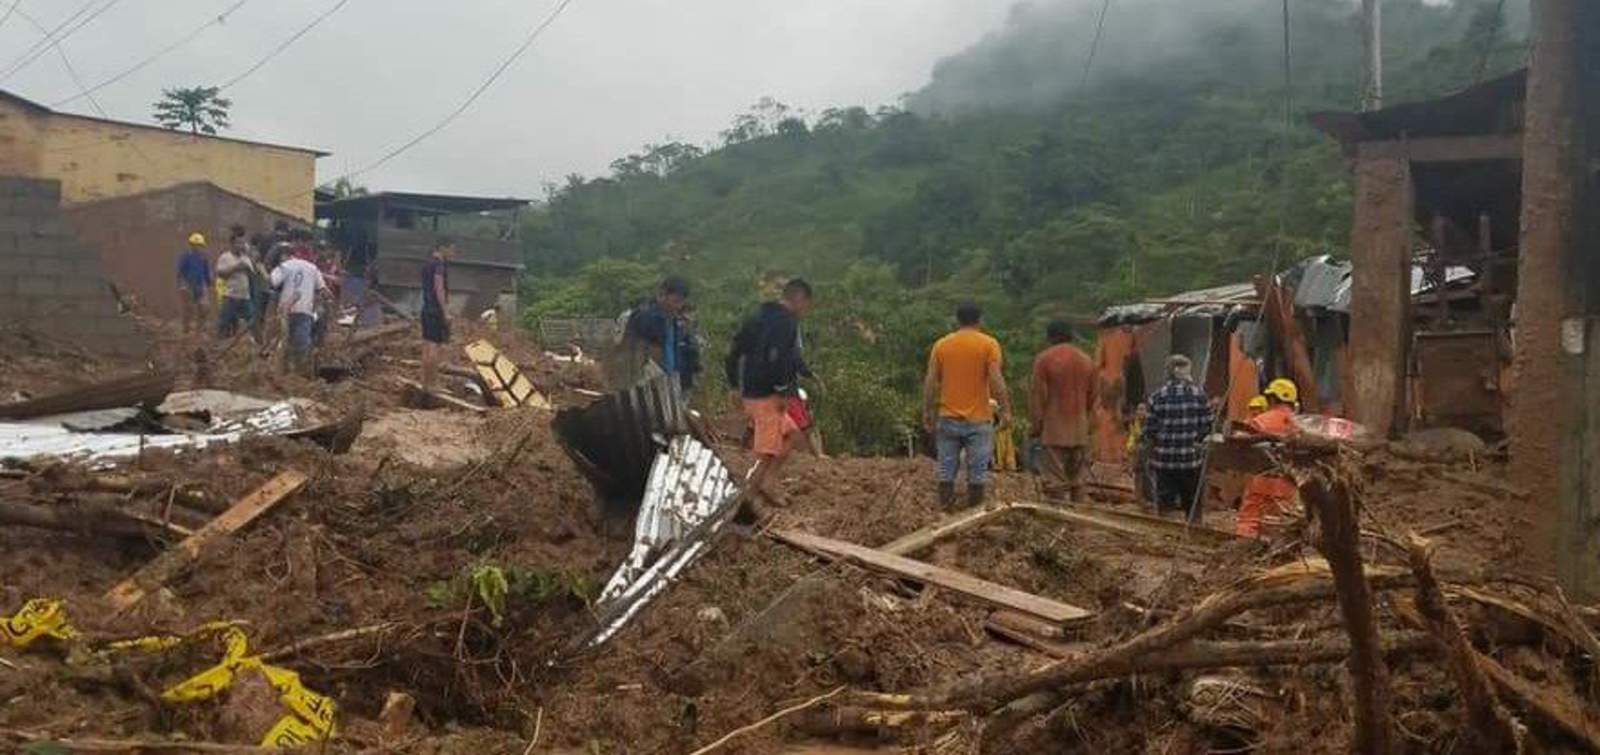 El corrimiento se produjo en el cantón Limón Indanza, perteneciente a esa provincia amazónica ecuatoriana, como consecuencia de las fuertes lluvias que se registraron en las últimas horas en el lugar, de acuerdo a un boletín del Servicio Integrado de Seguridad ECU 911. (ESPECIAL)